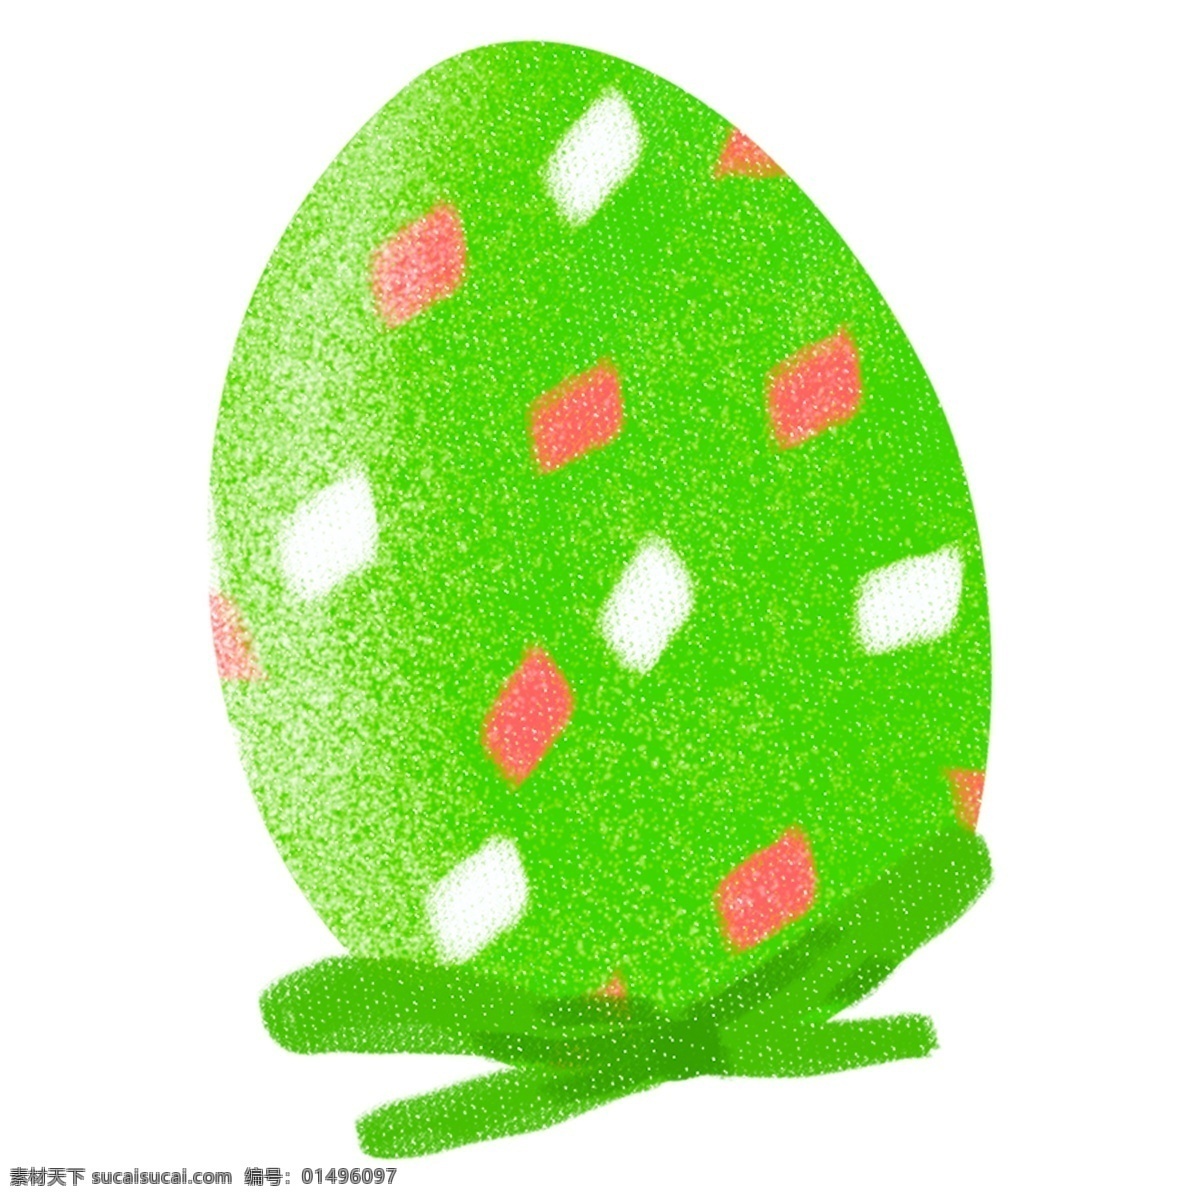 可爱 绿色 节日 彩蛋 免 抠 元素 插画元素 节日彩蛋 简约 卡通 免扣素材